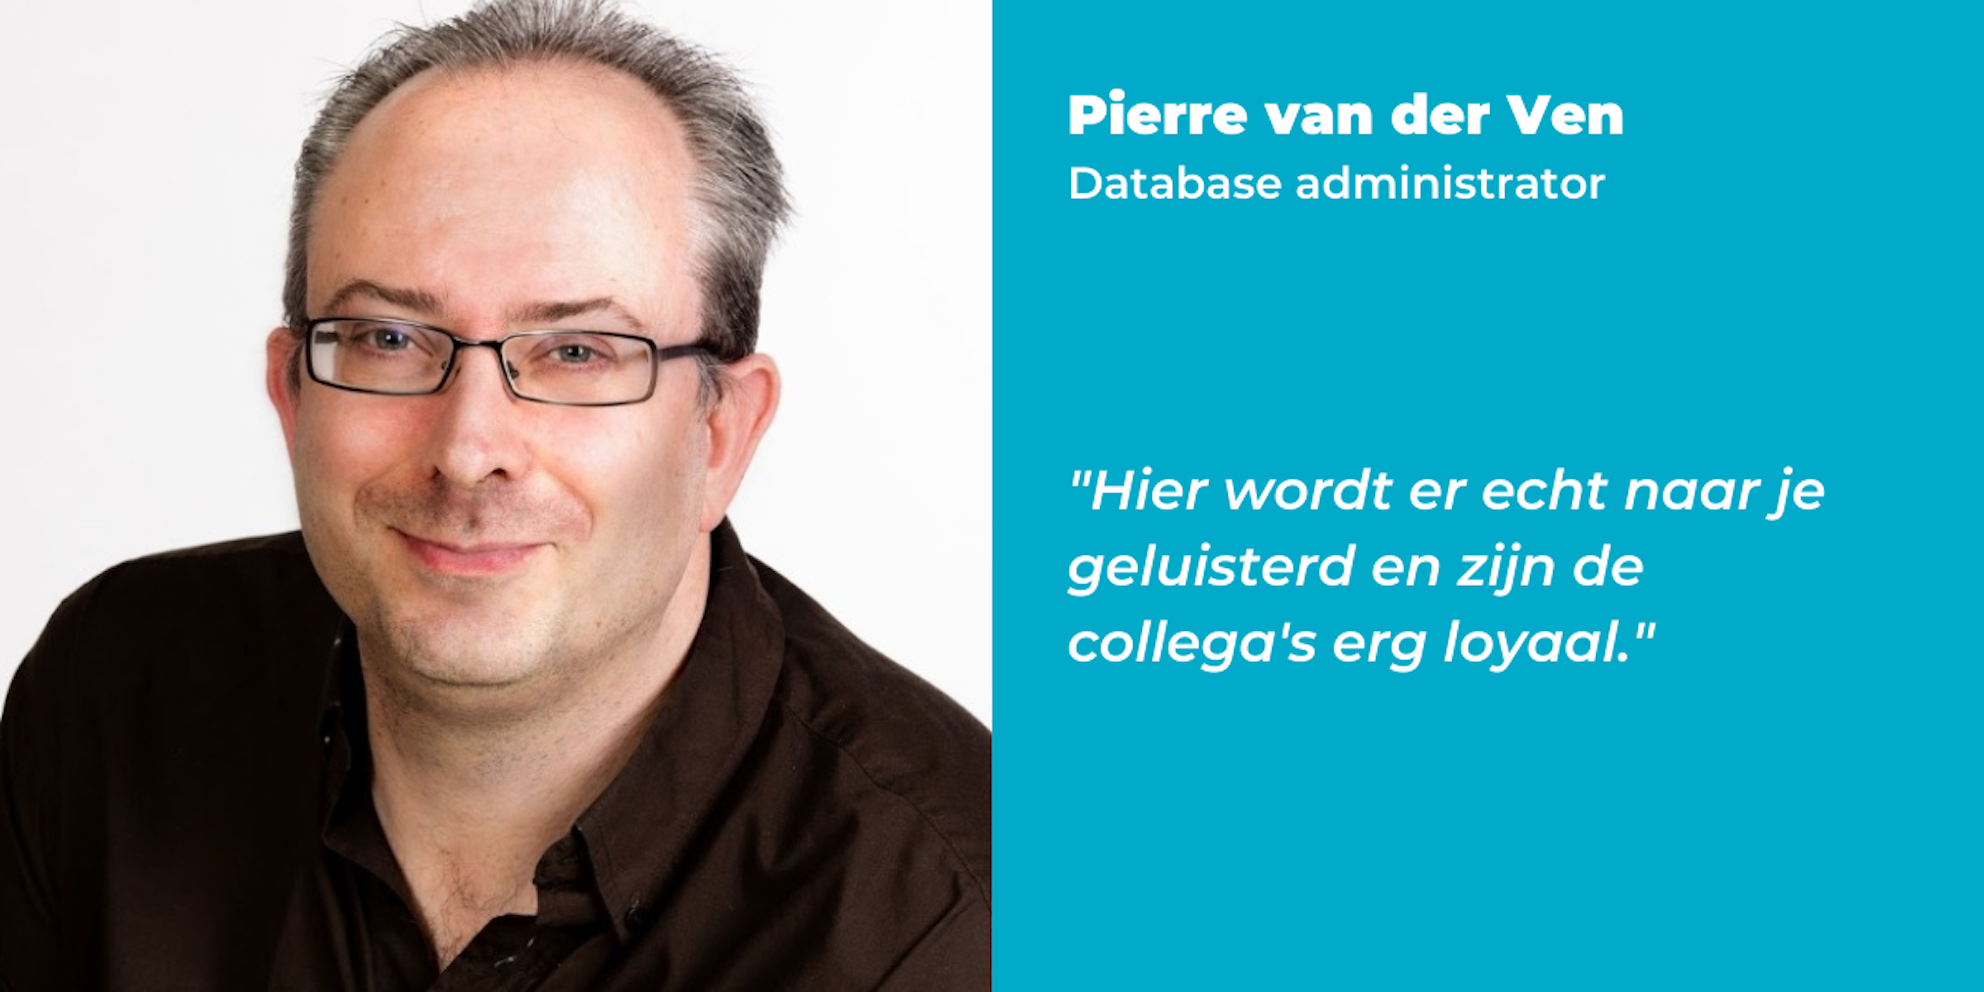 Pierre van der Ven quote